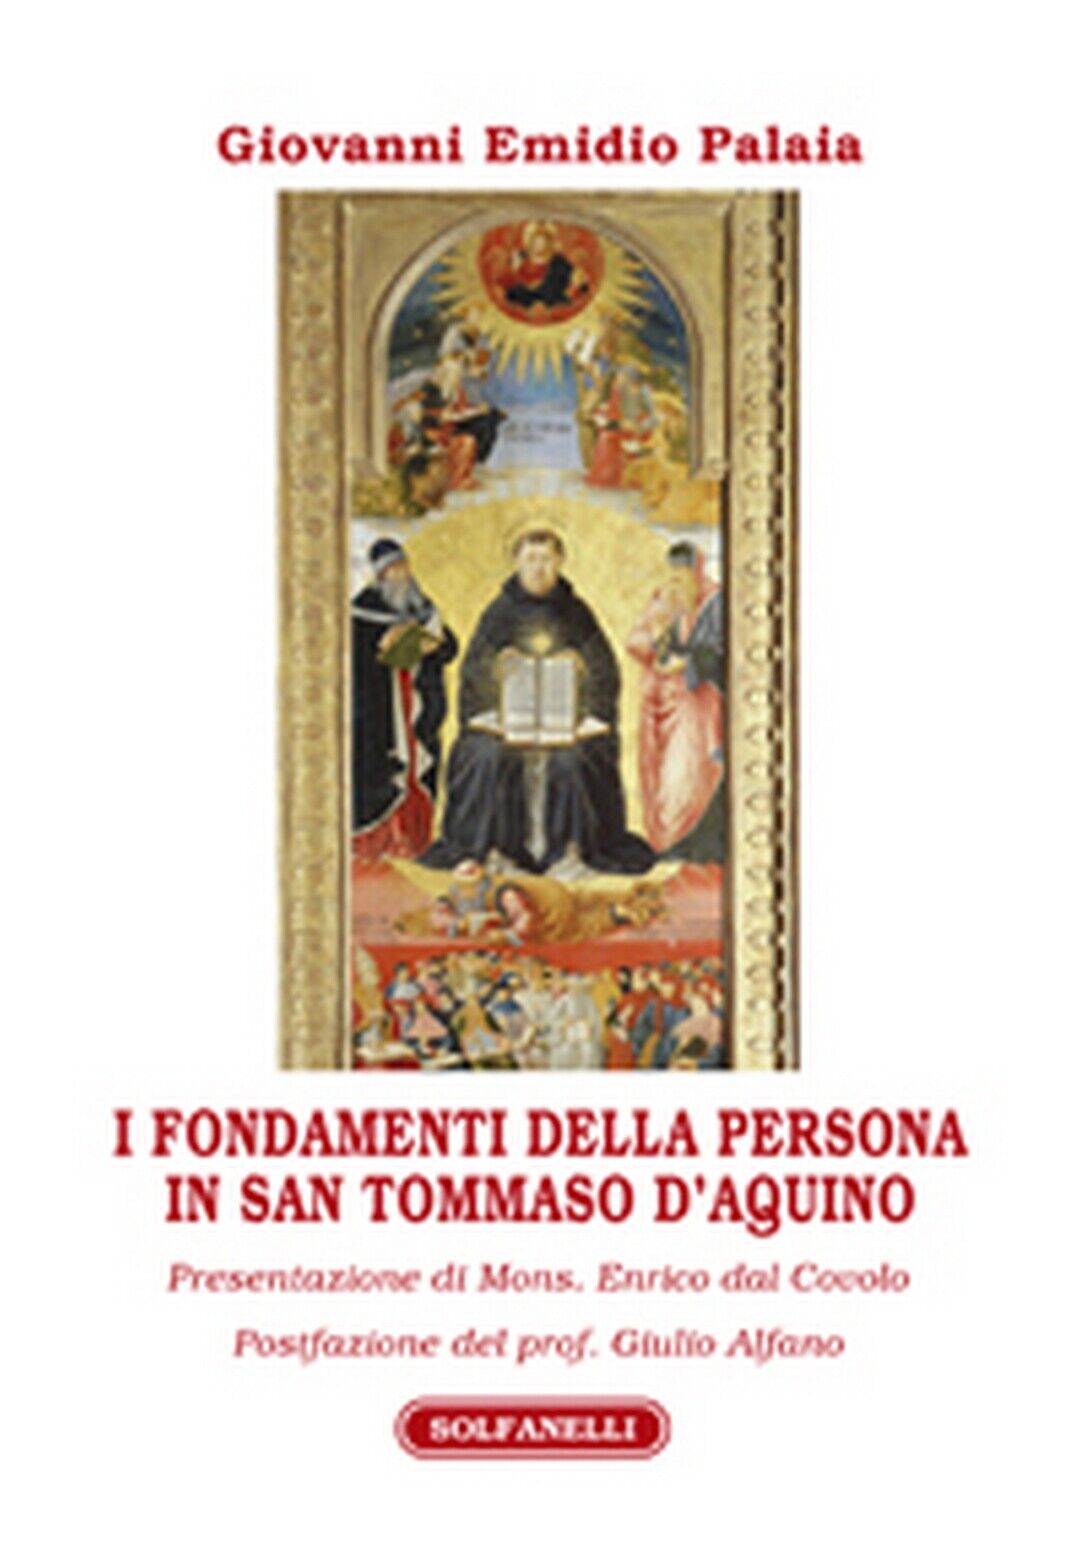 I FONDAMENTI DELLA PERSONA IN SAN TOMMASO d'AQUINO  di Giovanni Emidio Palaia  